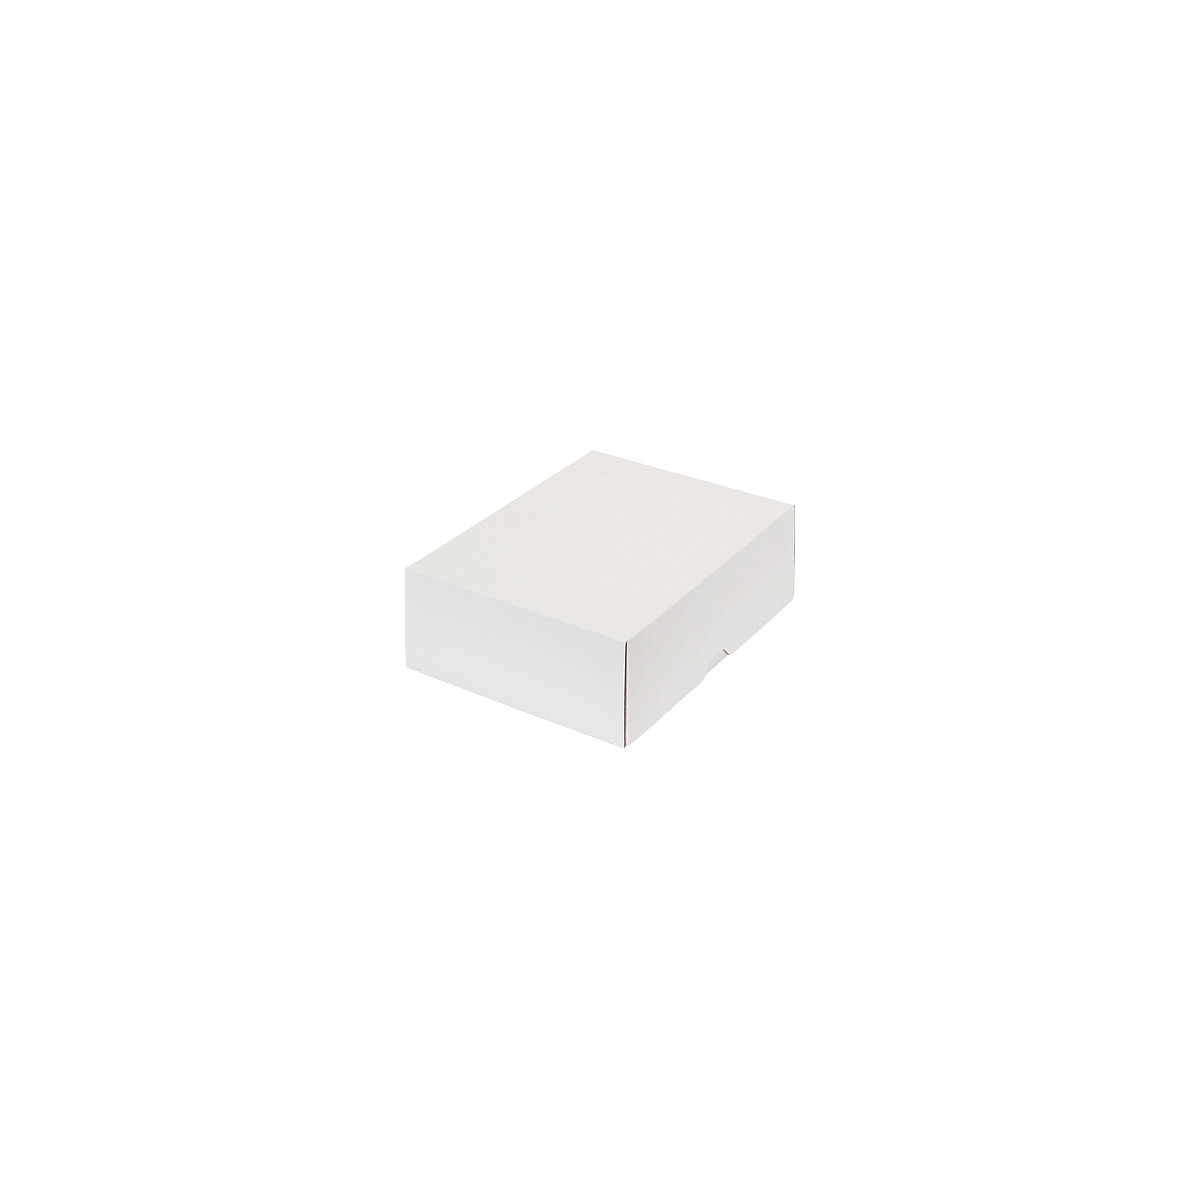 Stülpdeckelkarton, zweiteilig, Innenmaße 252 x 180 x 79 mm, B5, weiß, ab 300 Stk-13